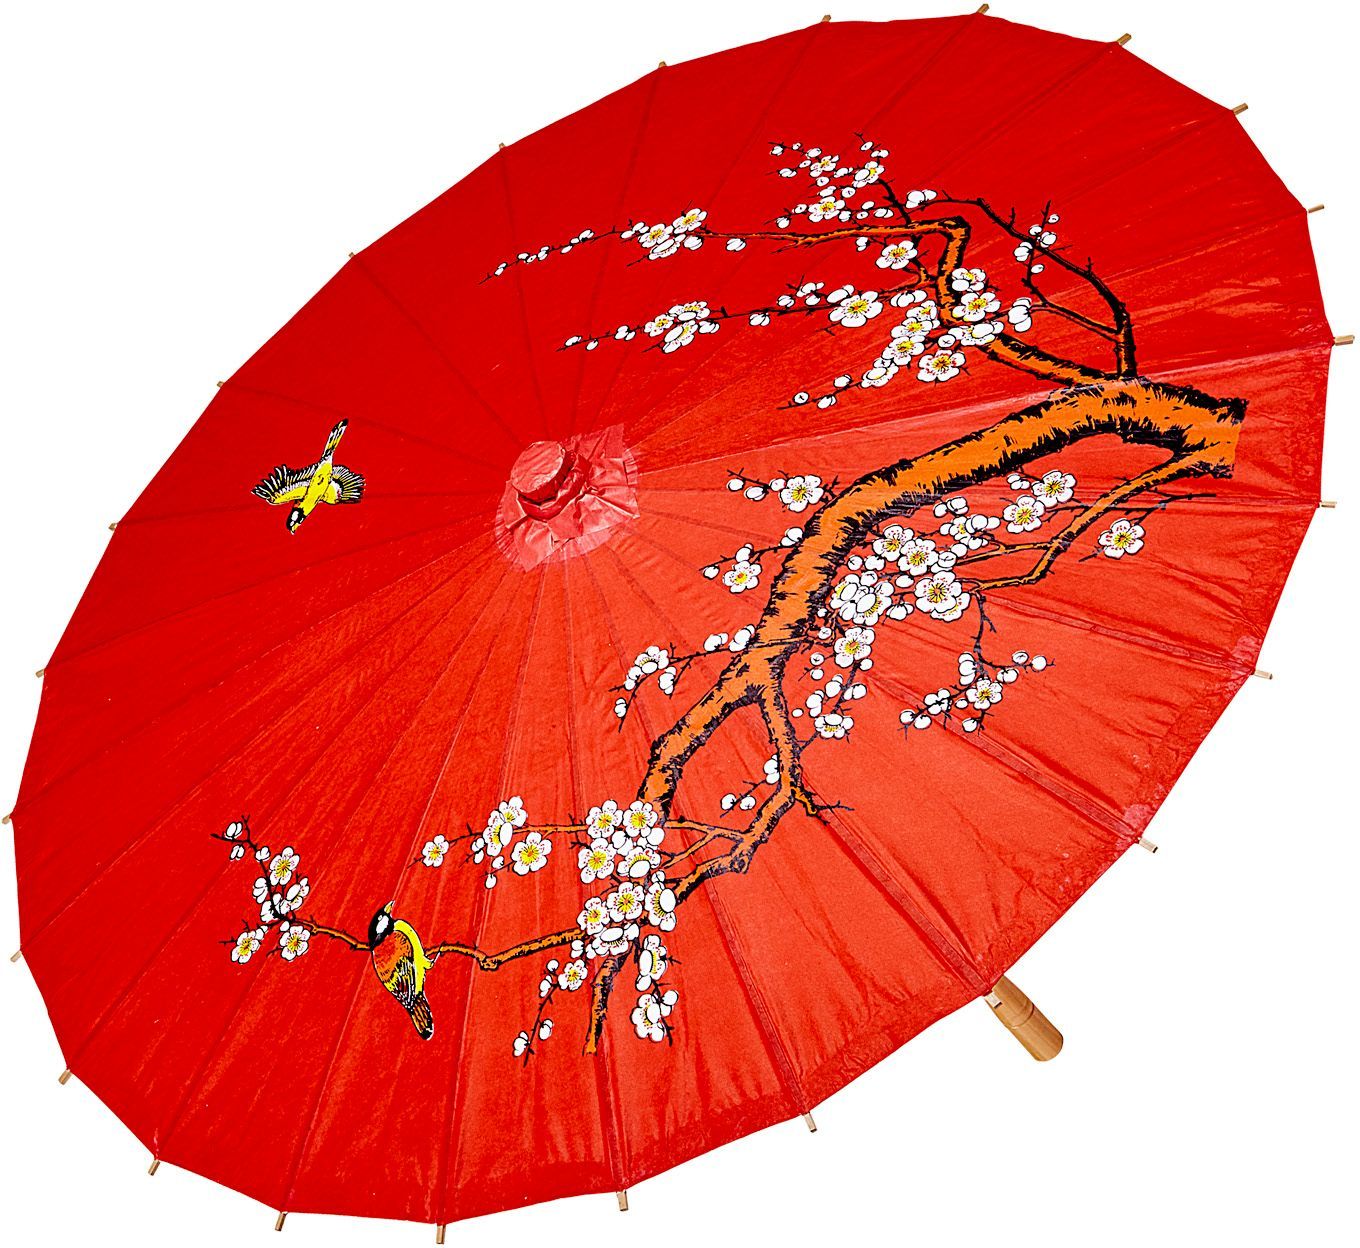 Chinese paraplu